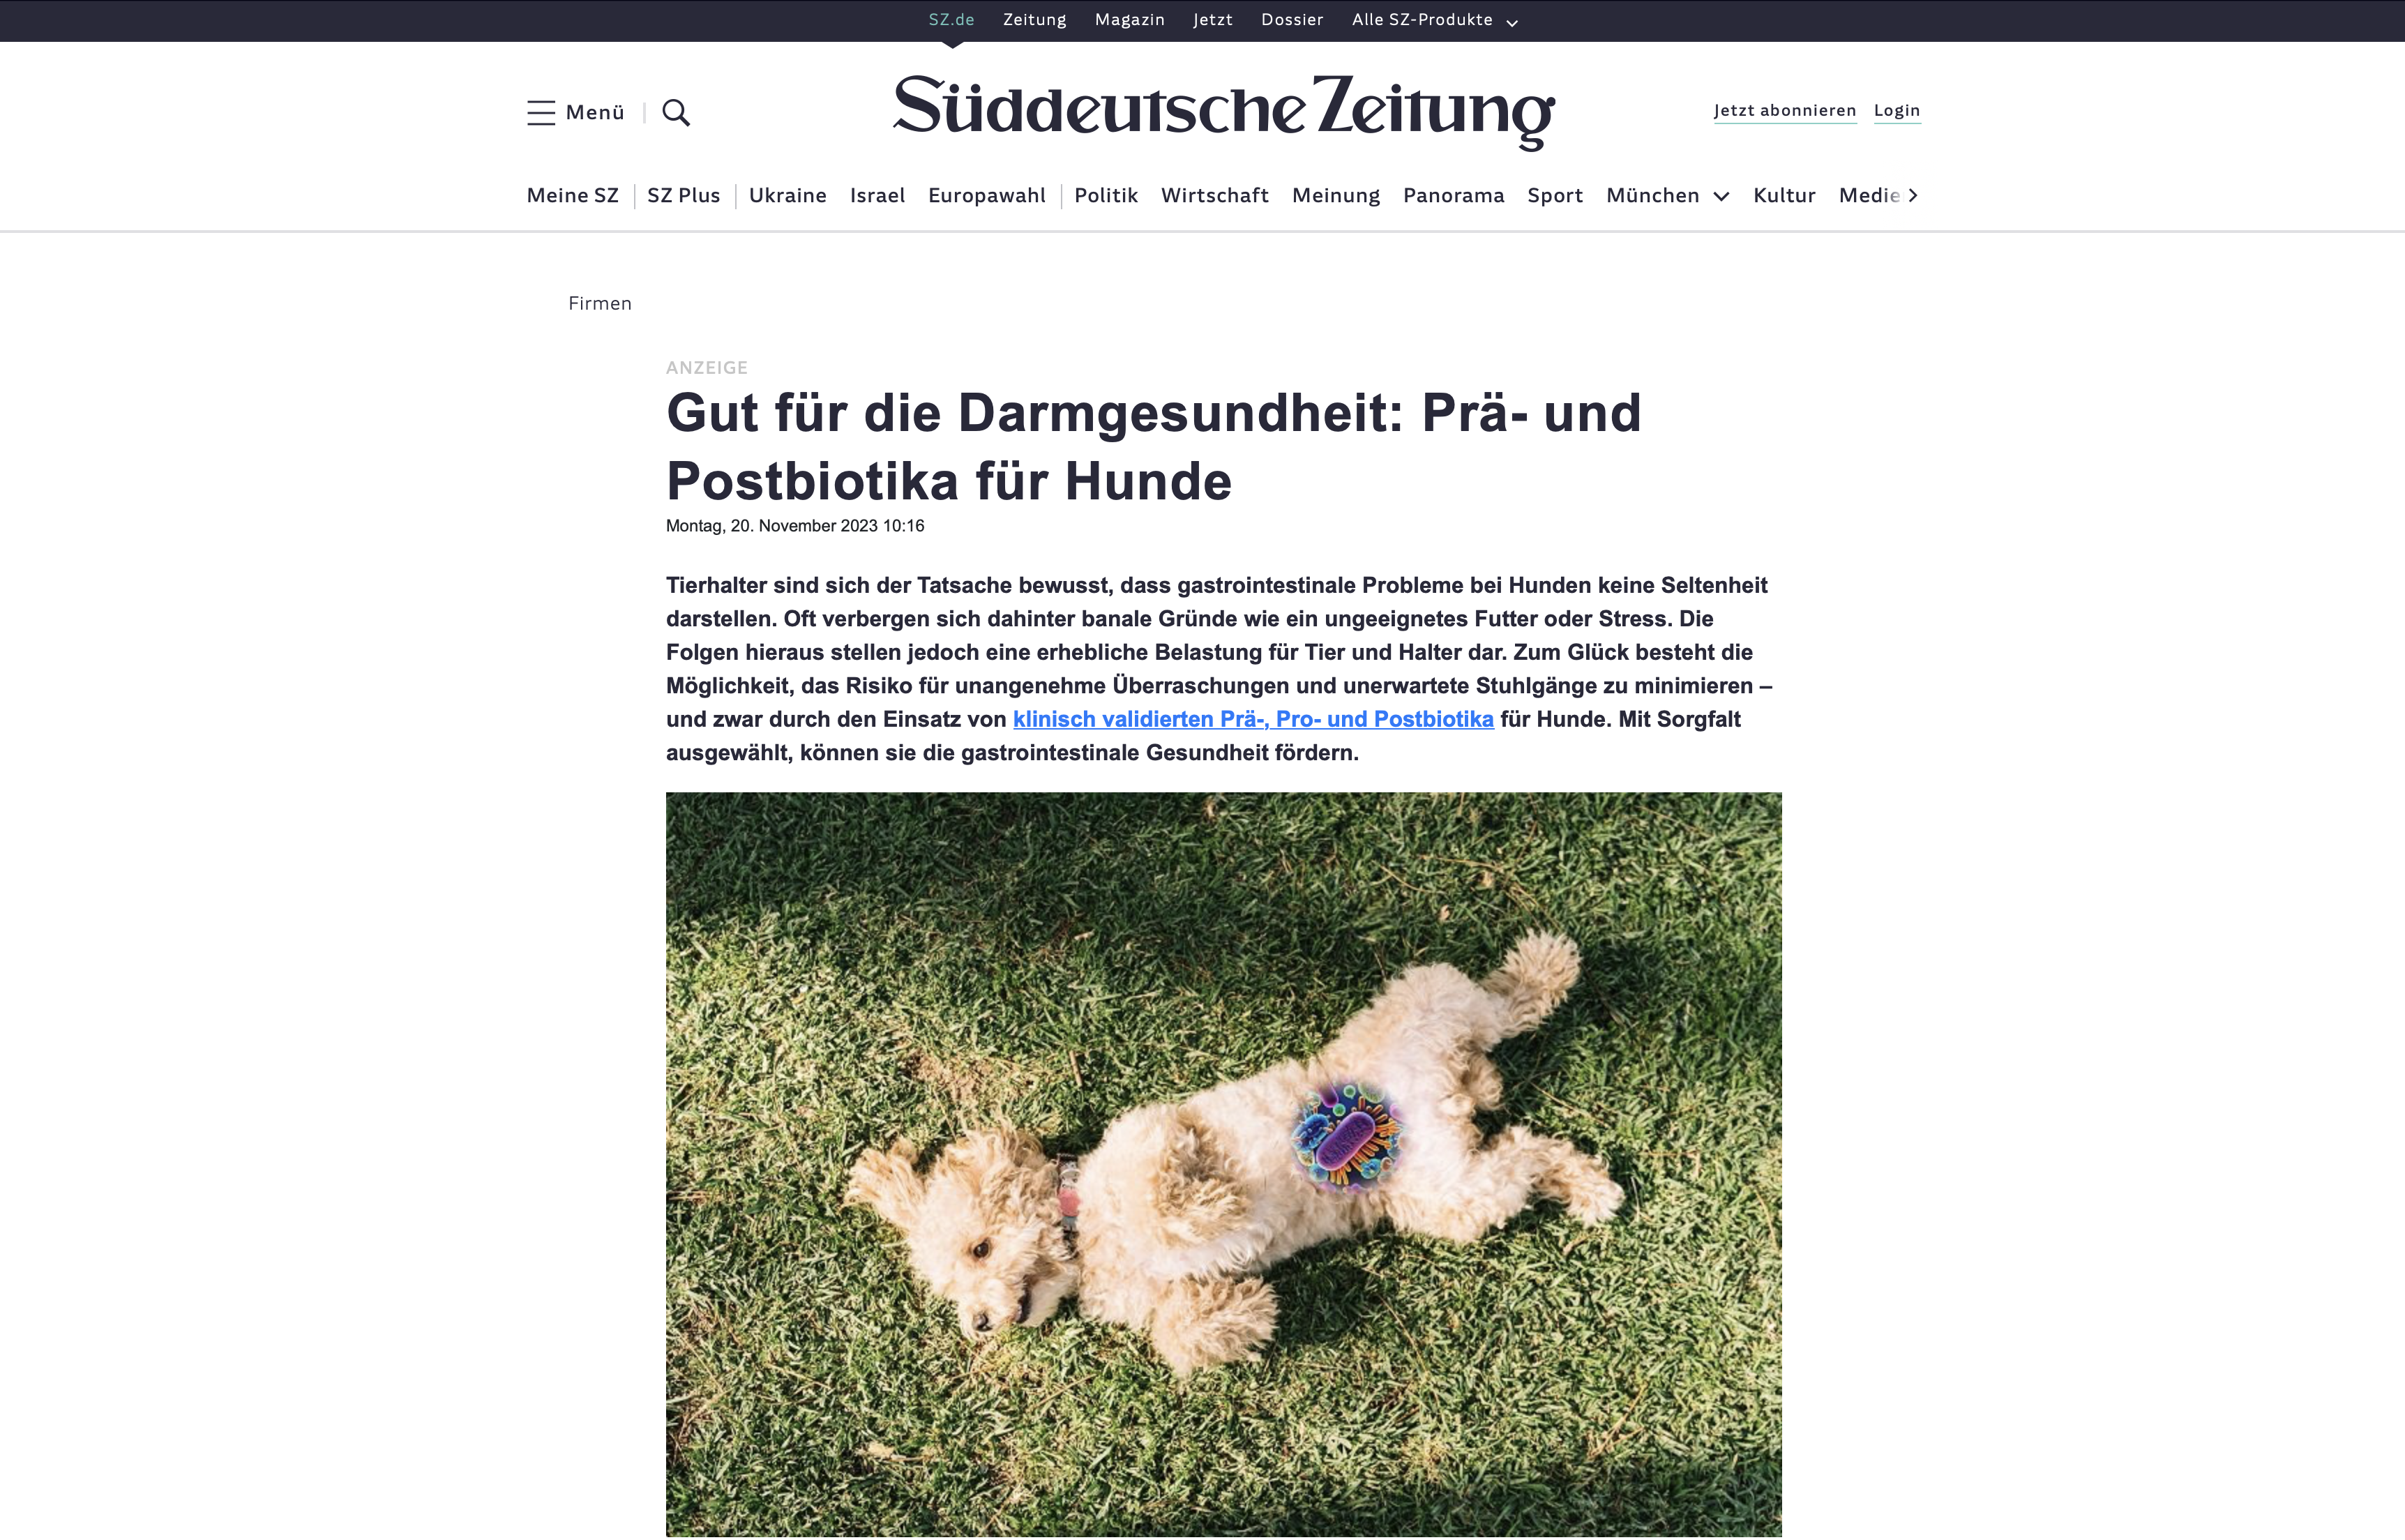 Süddeutsche Zeitung Advertorial Beispiel